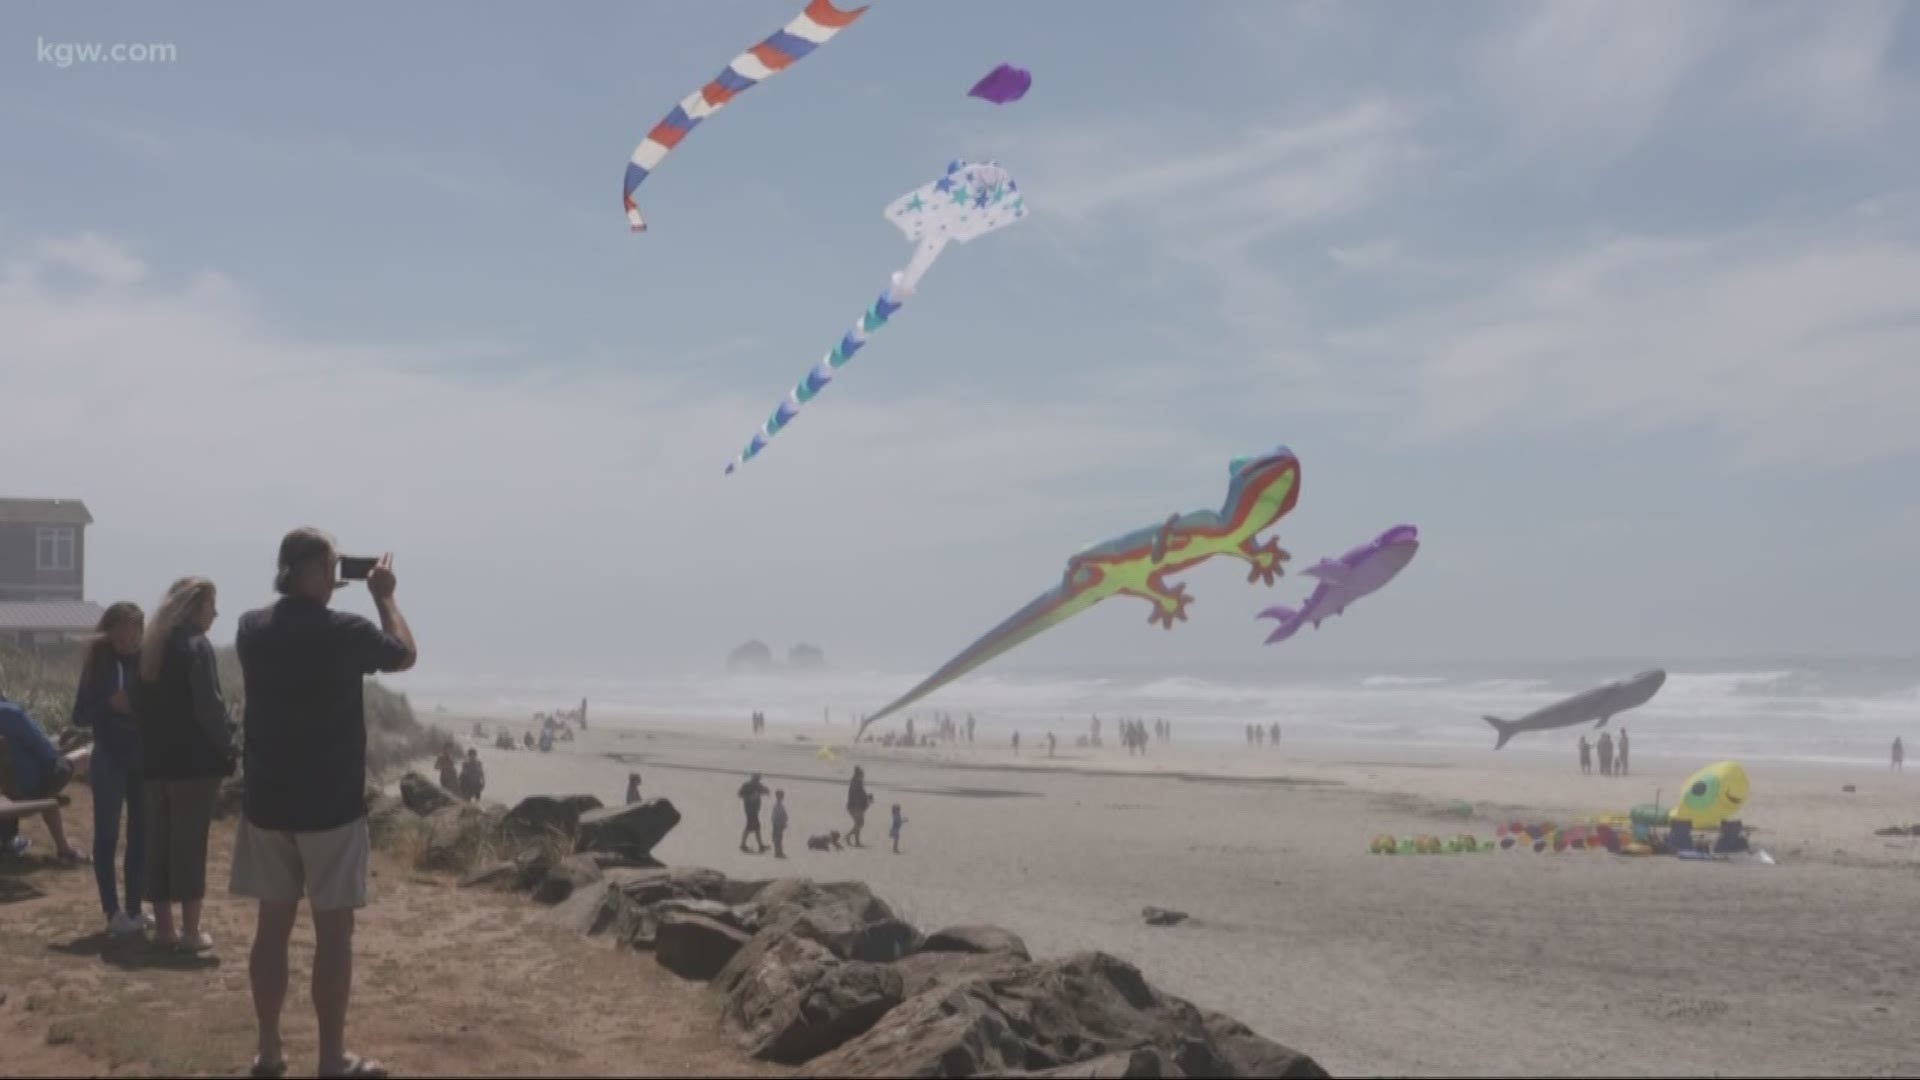 Grant's Getaways: Flying kites at Rockaway Beach.